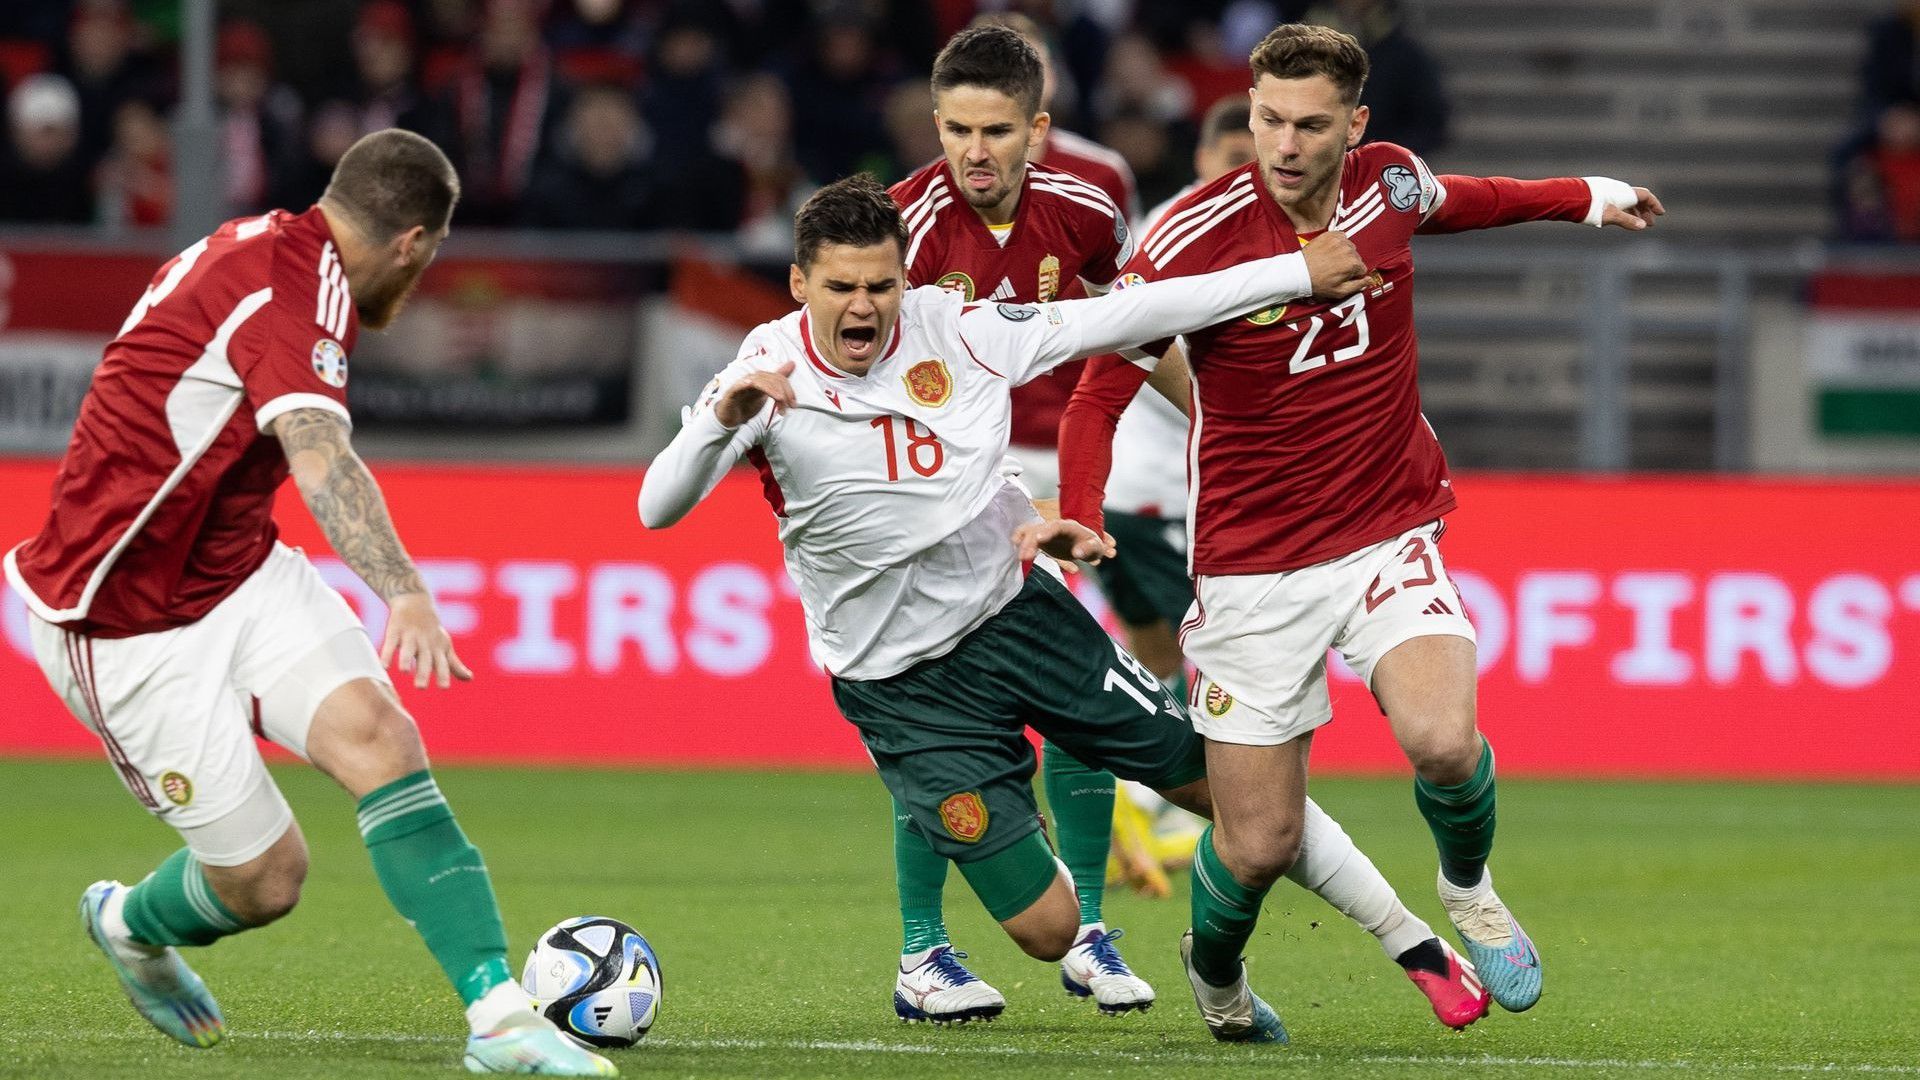 Esélyt sem adott a magyar válogatott a bolgároknak az Eb-selejtezősorozat első mérkőzésén. (Fotó: Zsolnai Péter)